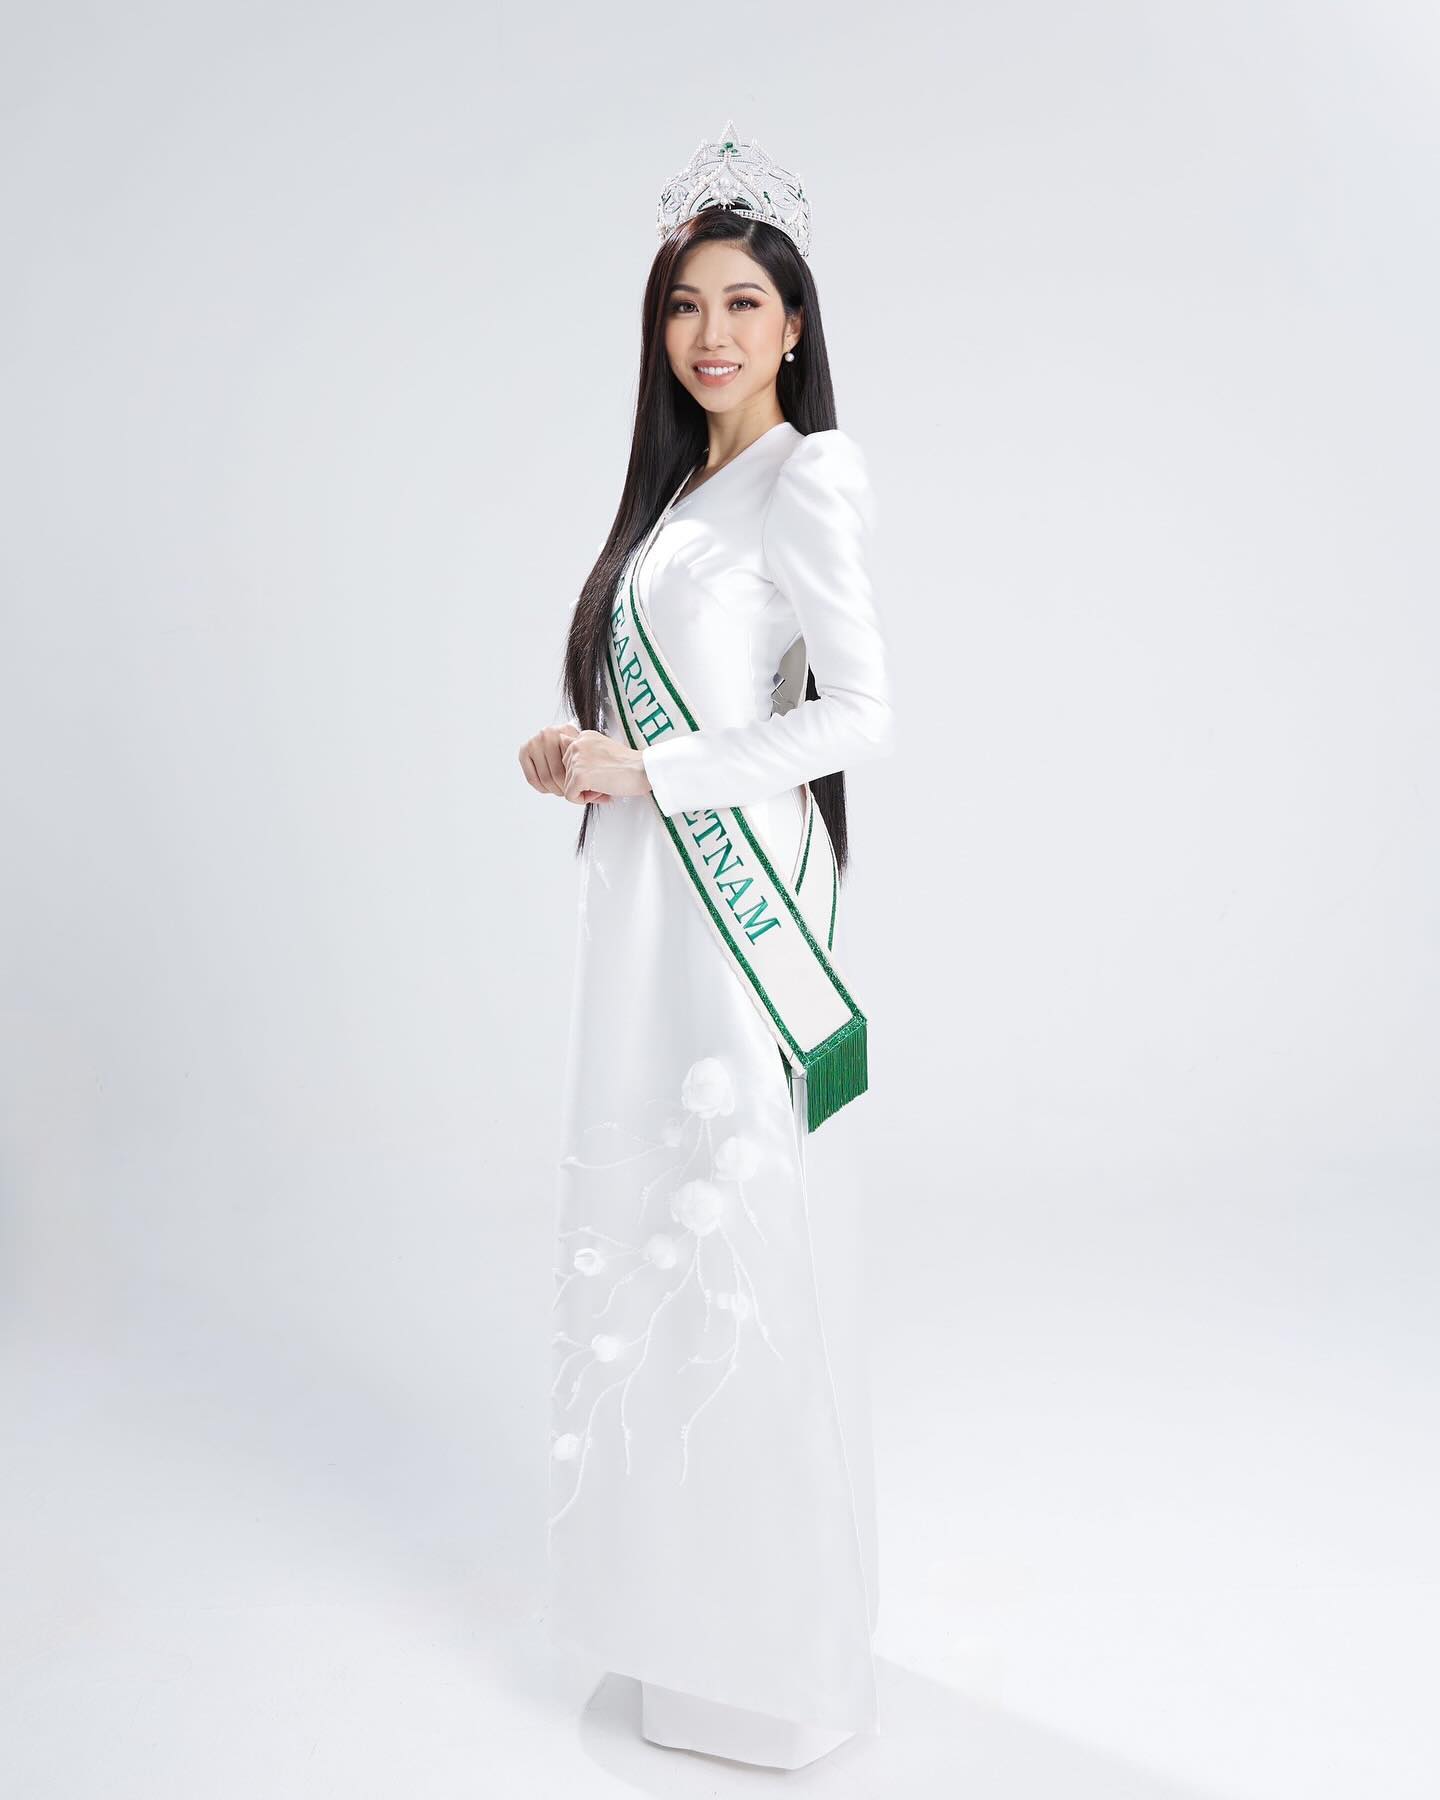 Hoa hậu Lan Anh được Á hậu Thạch Thu Thảo nói điều bất ngờ trước ngày thi Miss Earth 2023 - Ảnh 3.